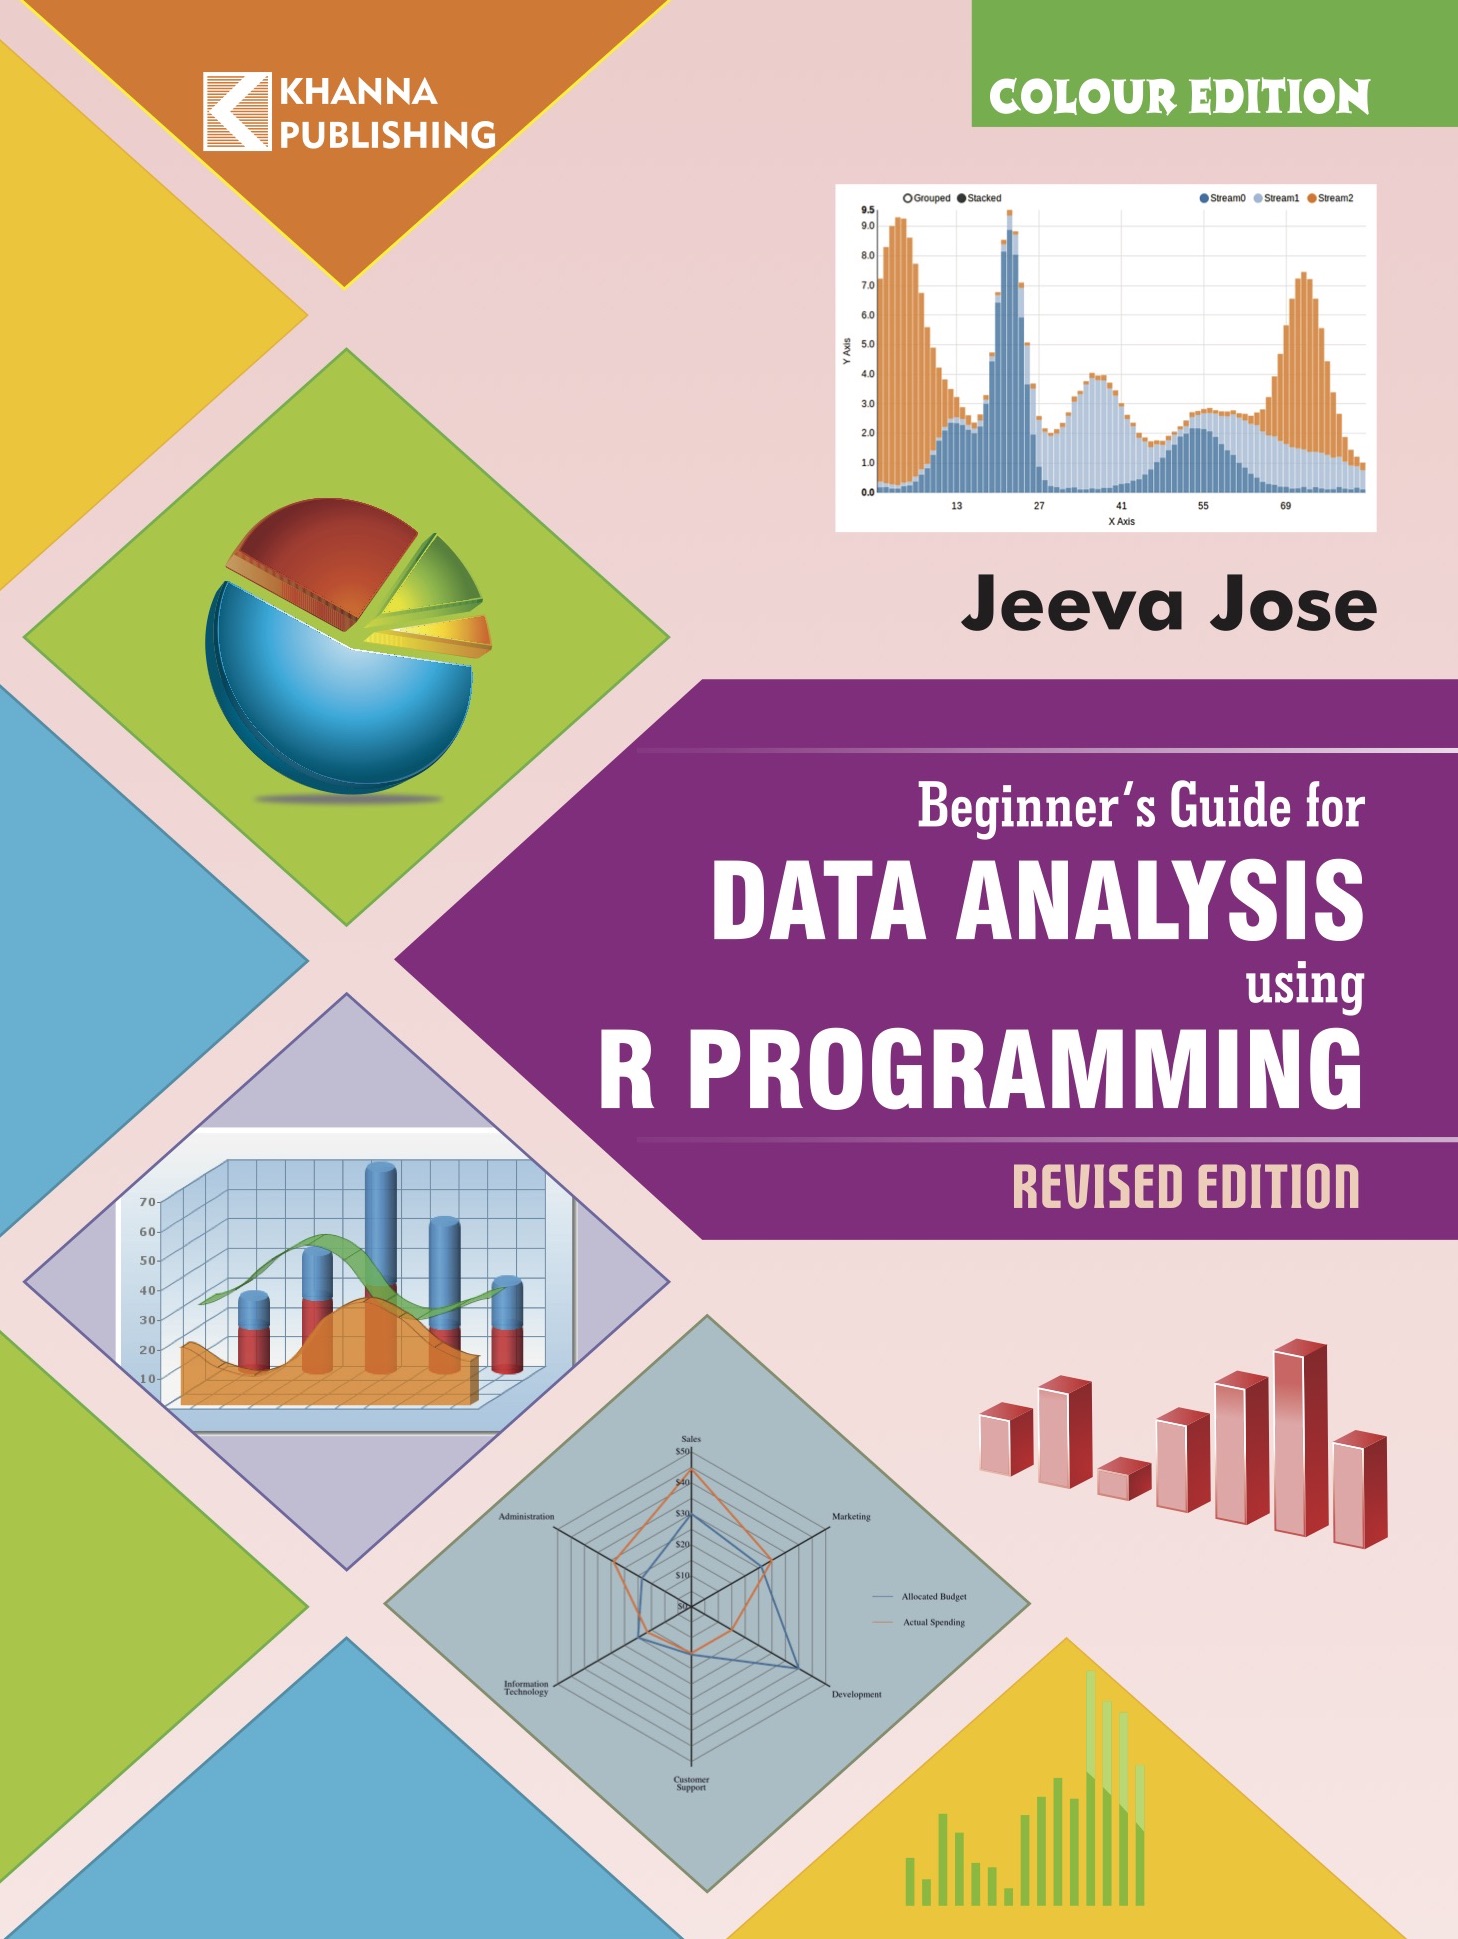 Beginner's Guide for Data Analysis using R Programming